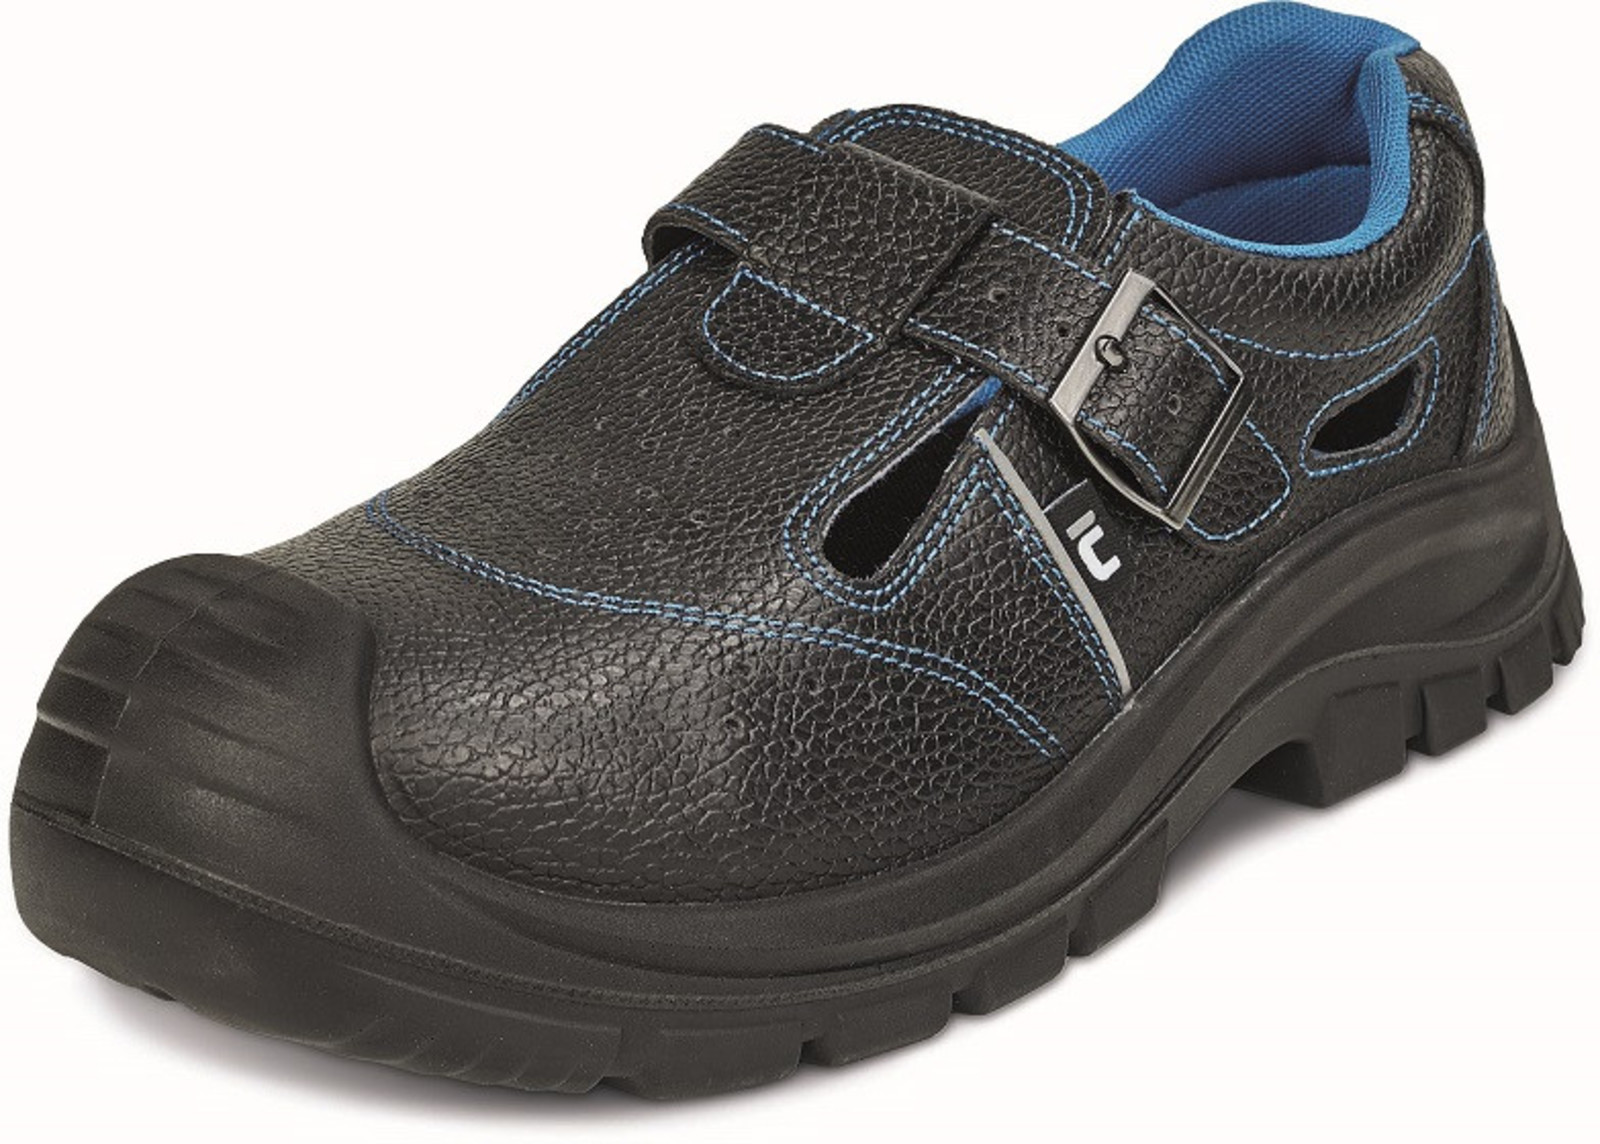 Bezpečnostné sandále Raven XT S1P - veľkosť: 46, farba: čierna